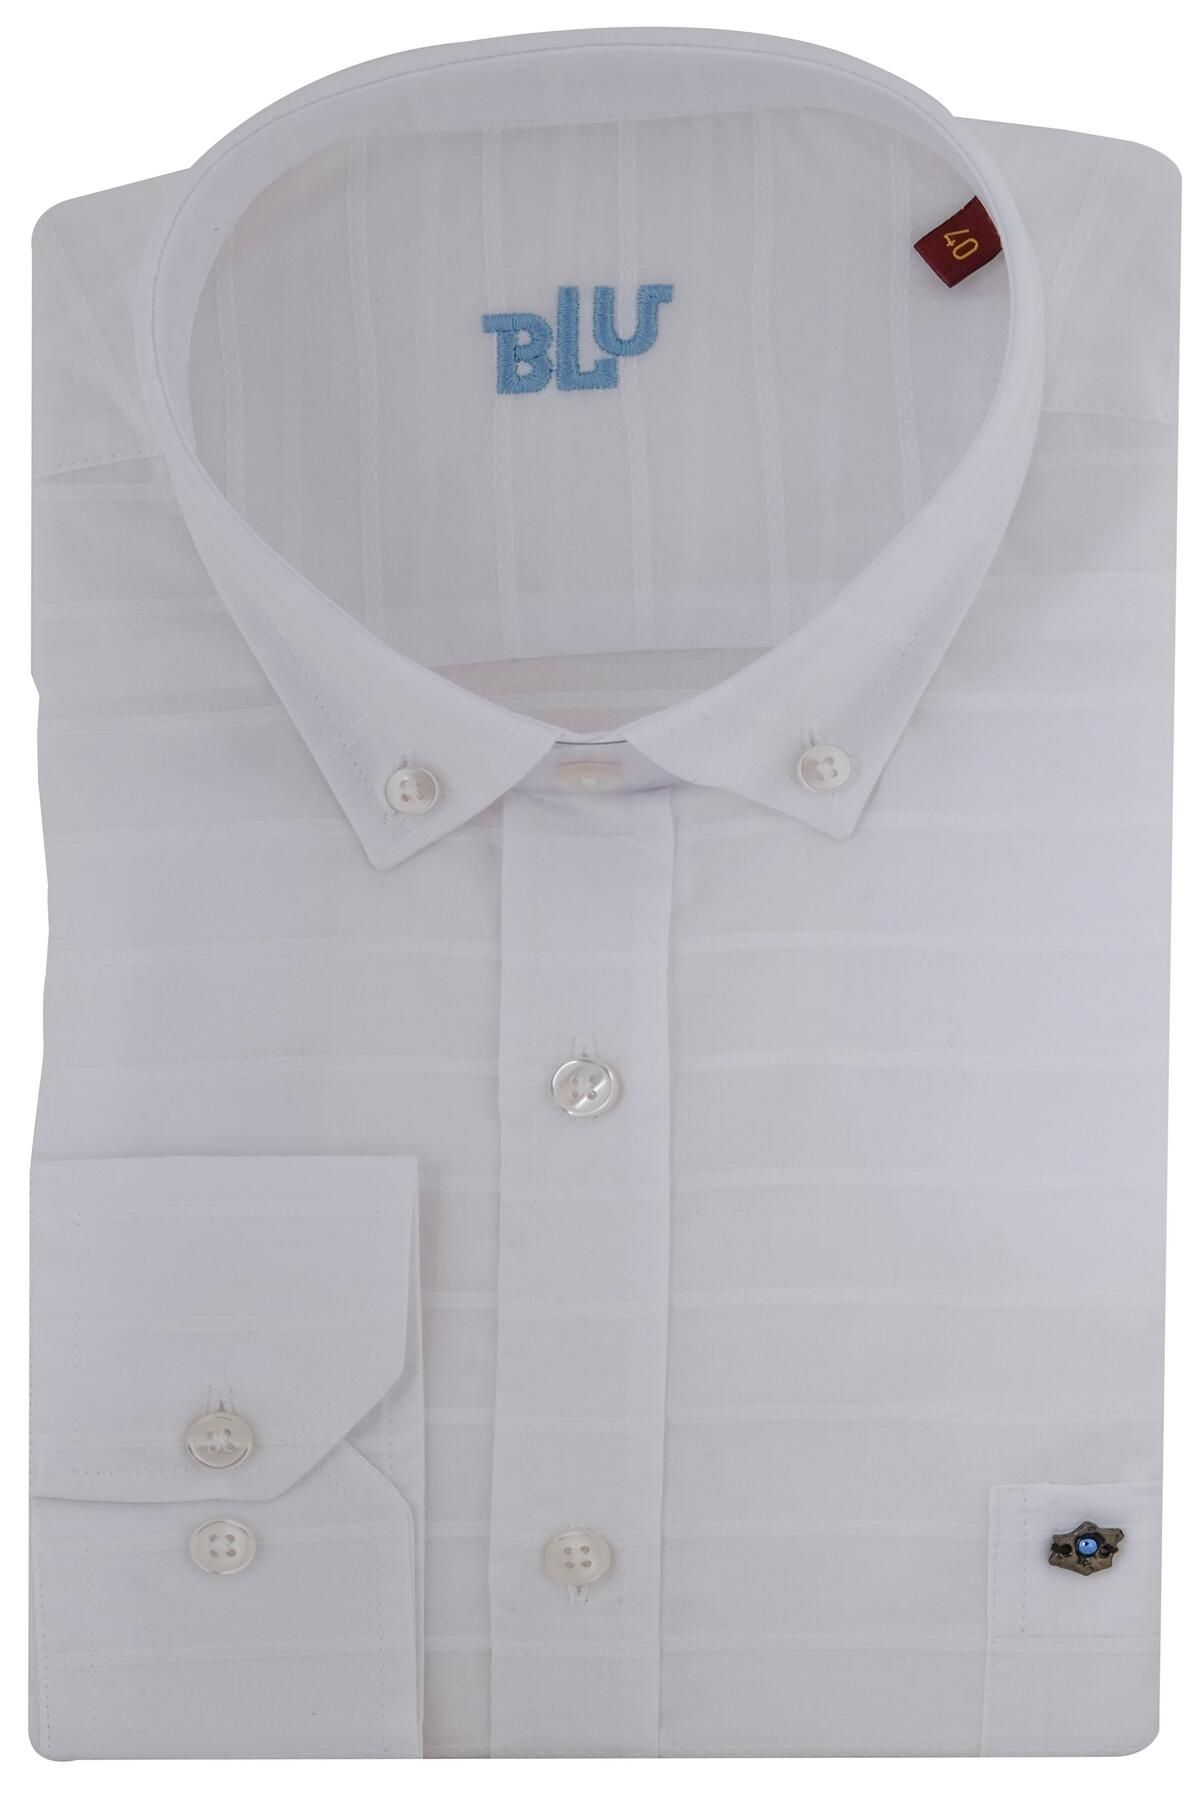 BLU Yarım İtalyan Üstten Düğmeli Yaka Klasik Gömlek